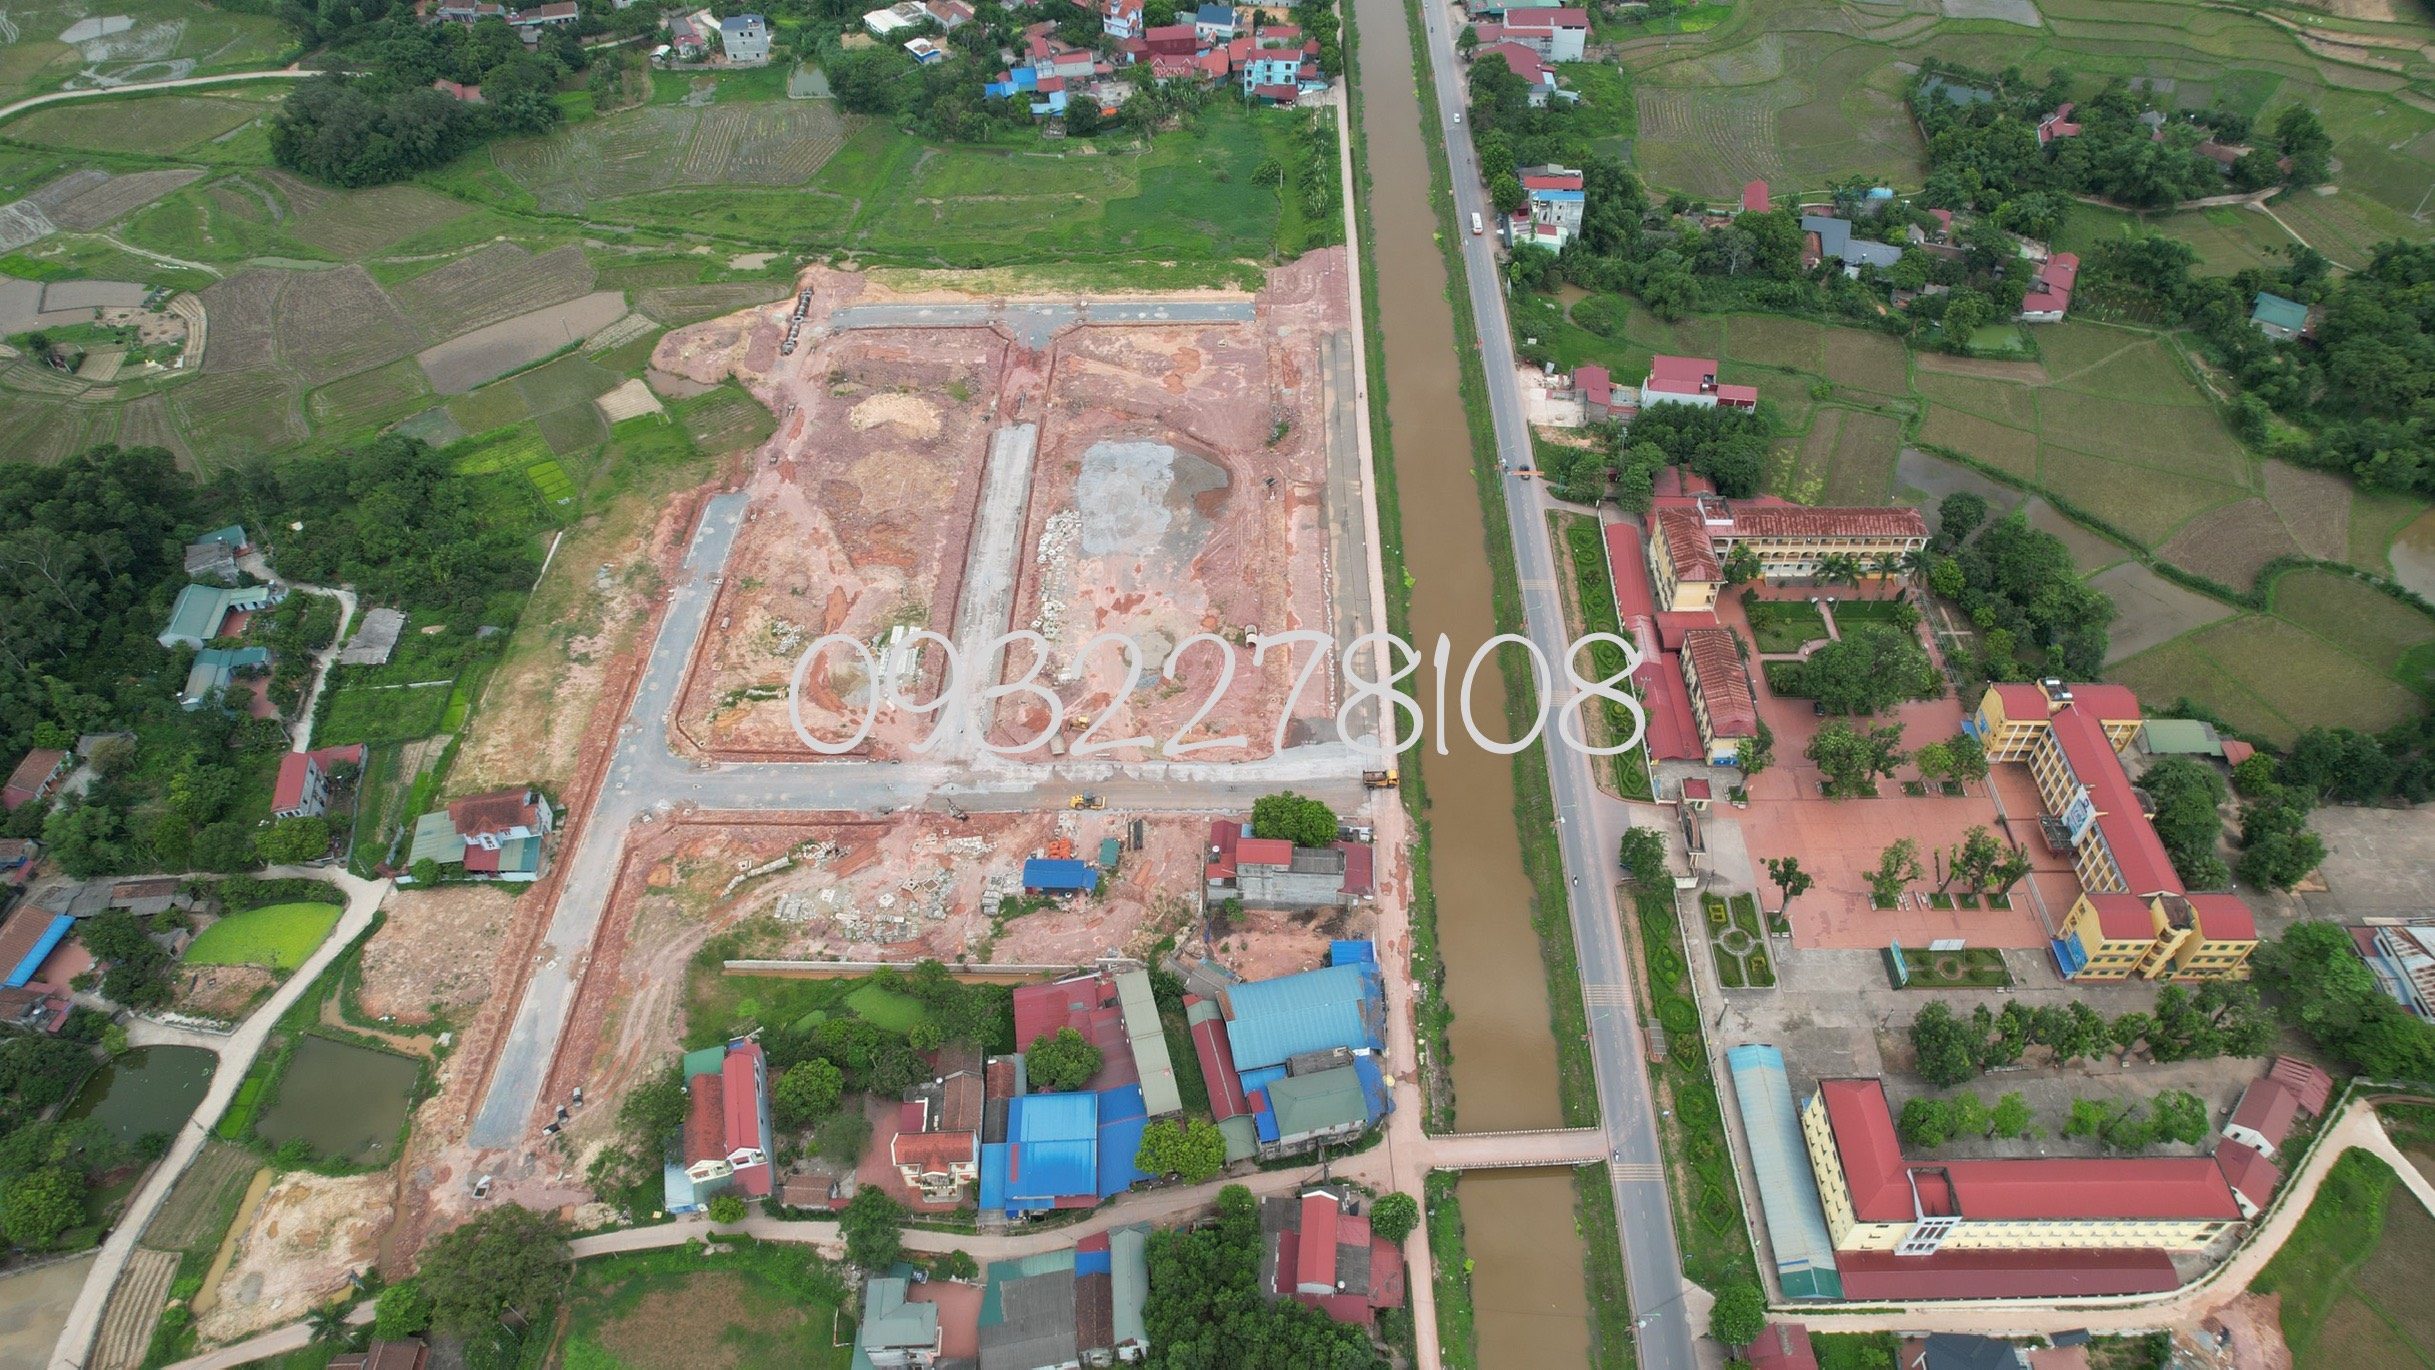 Giới thiệu thửa CL5-13 Khu đô thị số 5 thị trấn Hương Sơn huyện Phú Bình tỉnh Thái Nguyên.